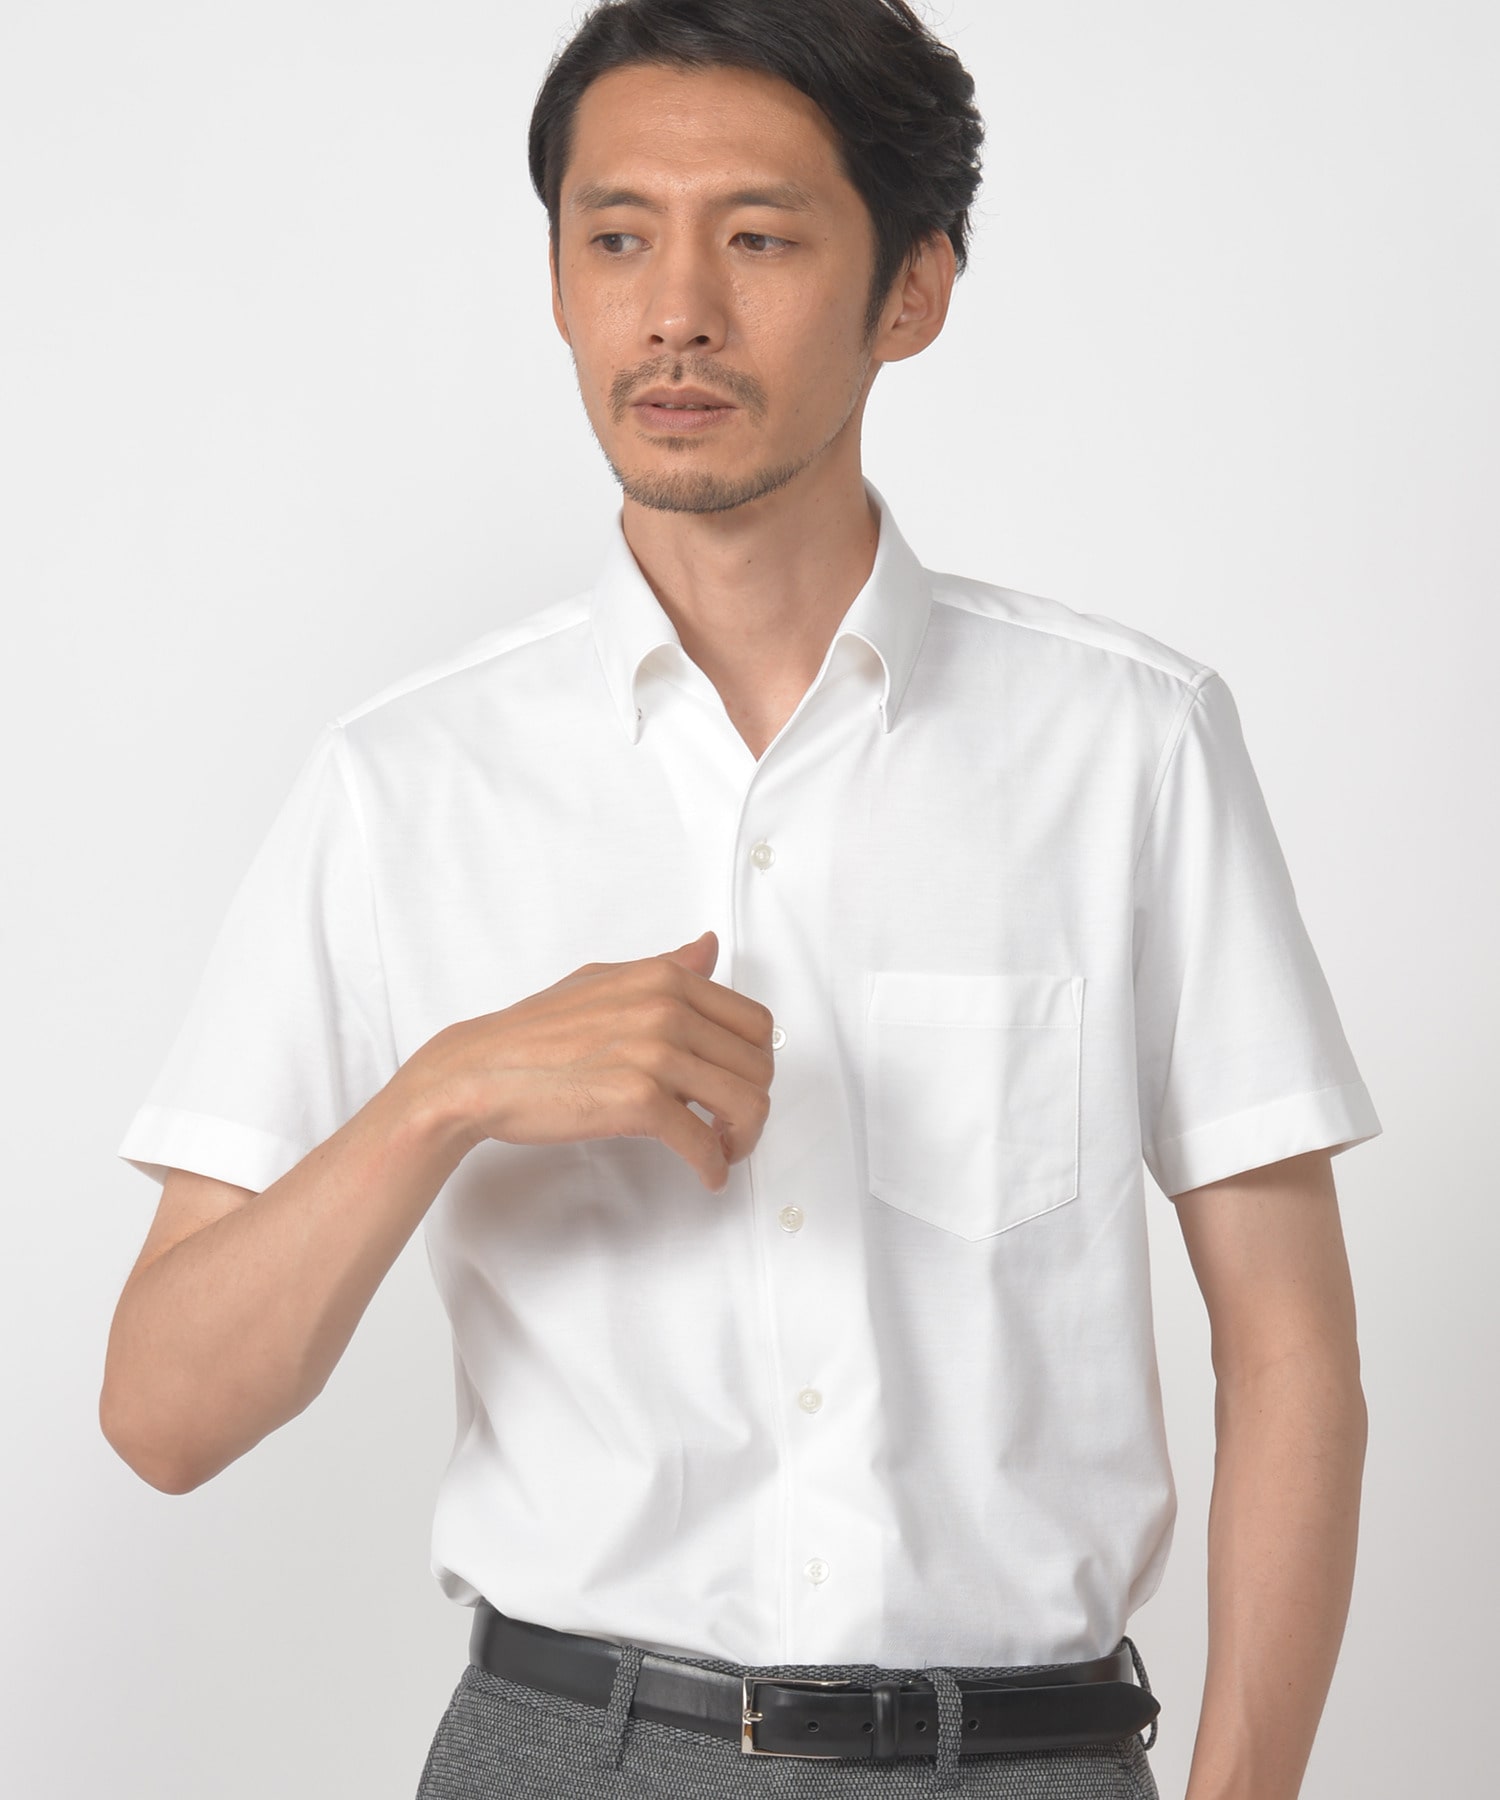 ディスノーティス ハイゲージニットワンピースカラー半袖シャツ メンズファッション通販 Men S Bigi Online Store メンズビギ オンラインストア